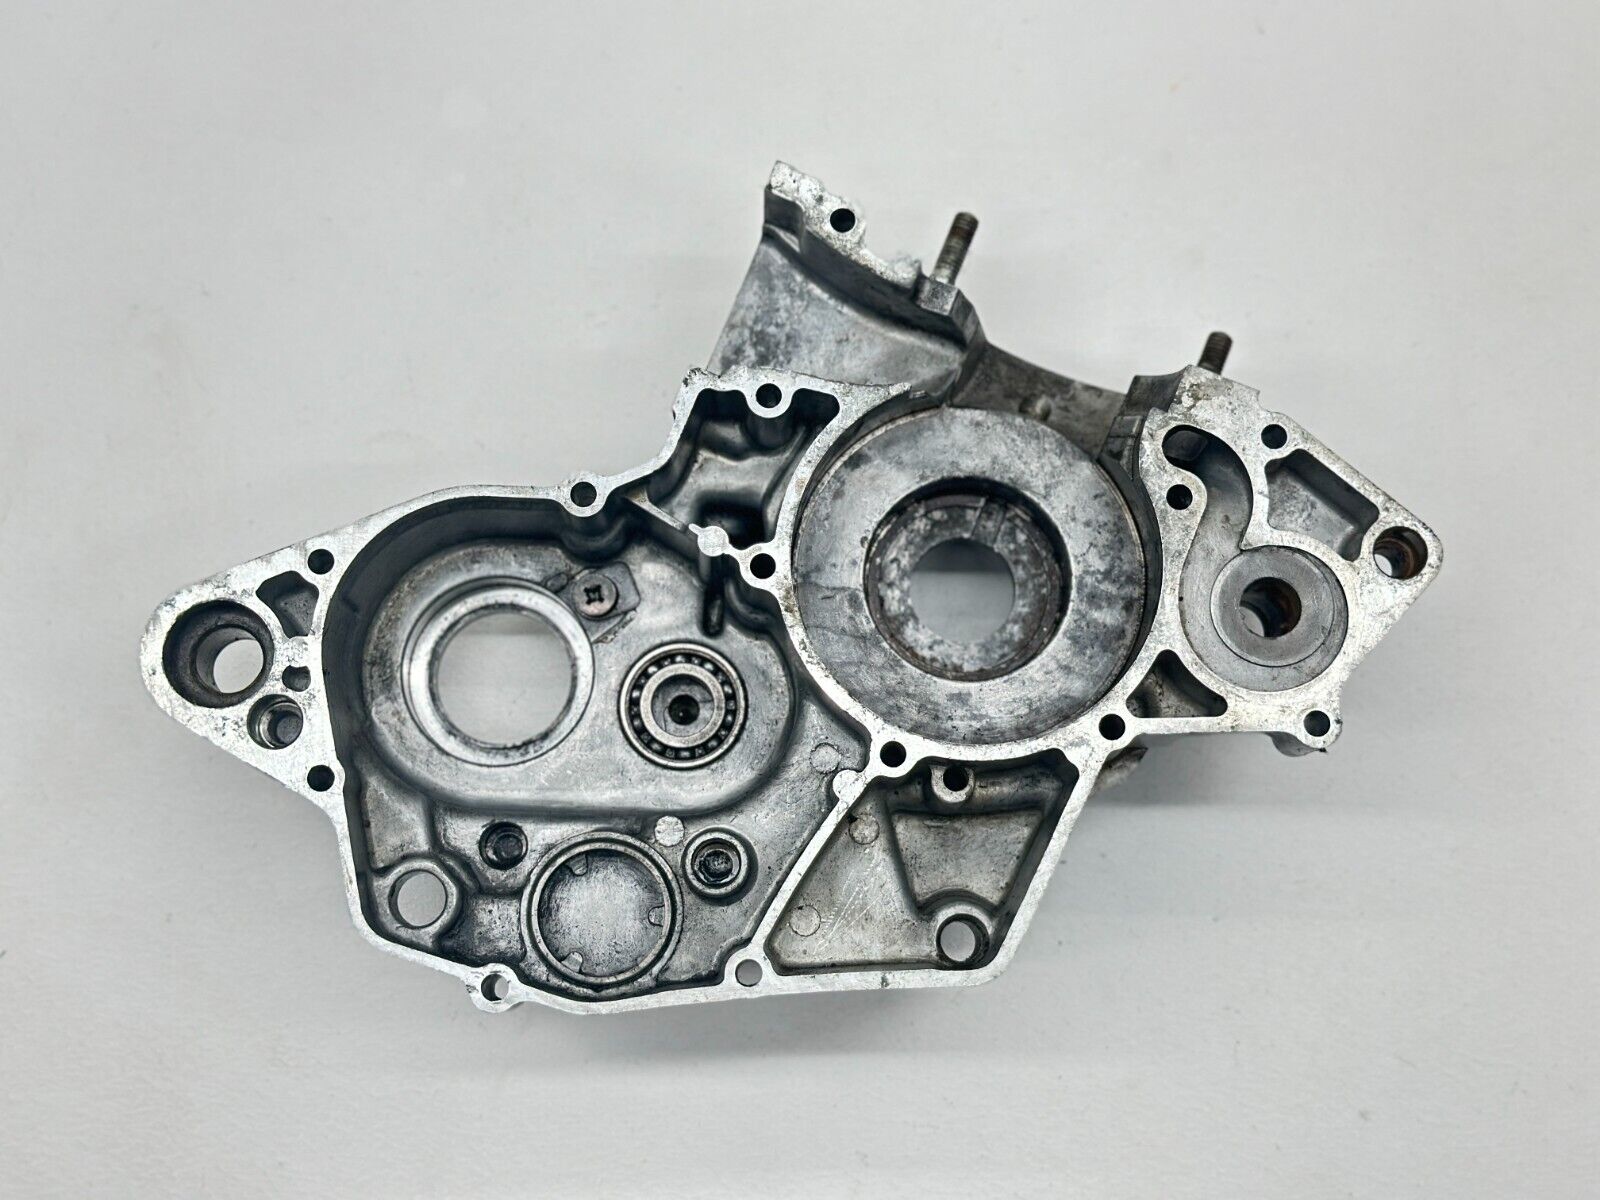 2001 -2007 Suzuki RM125 Left Side Engine Crankcase Motor Half Case Bottom End 02